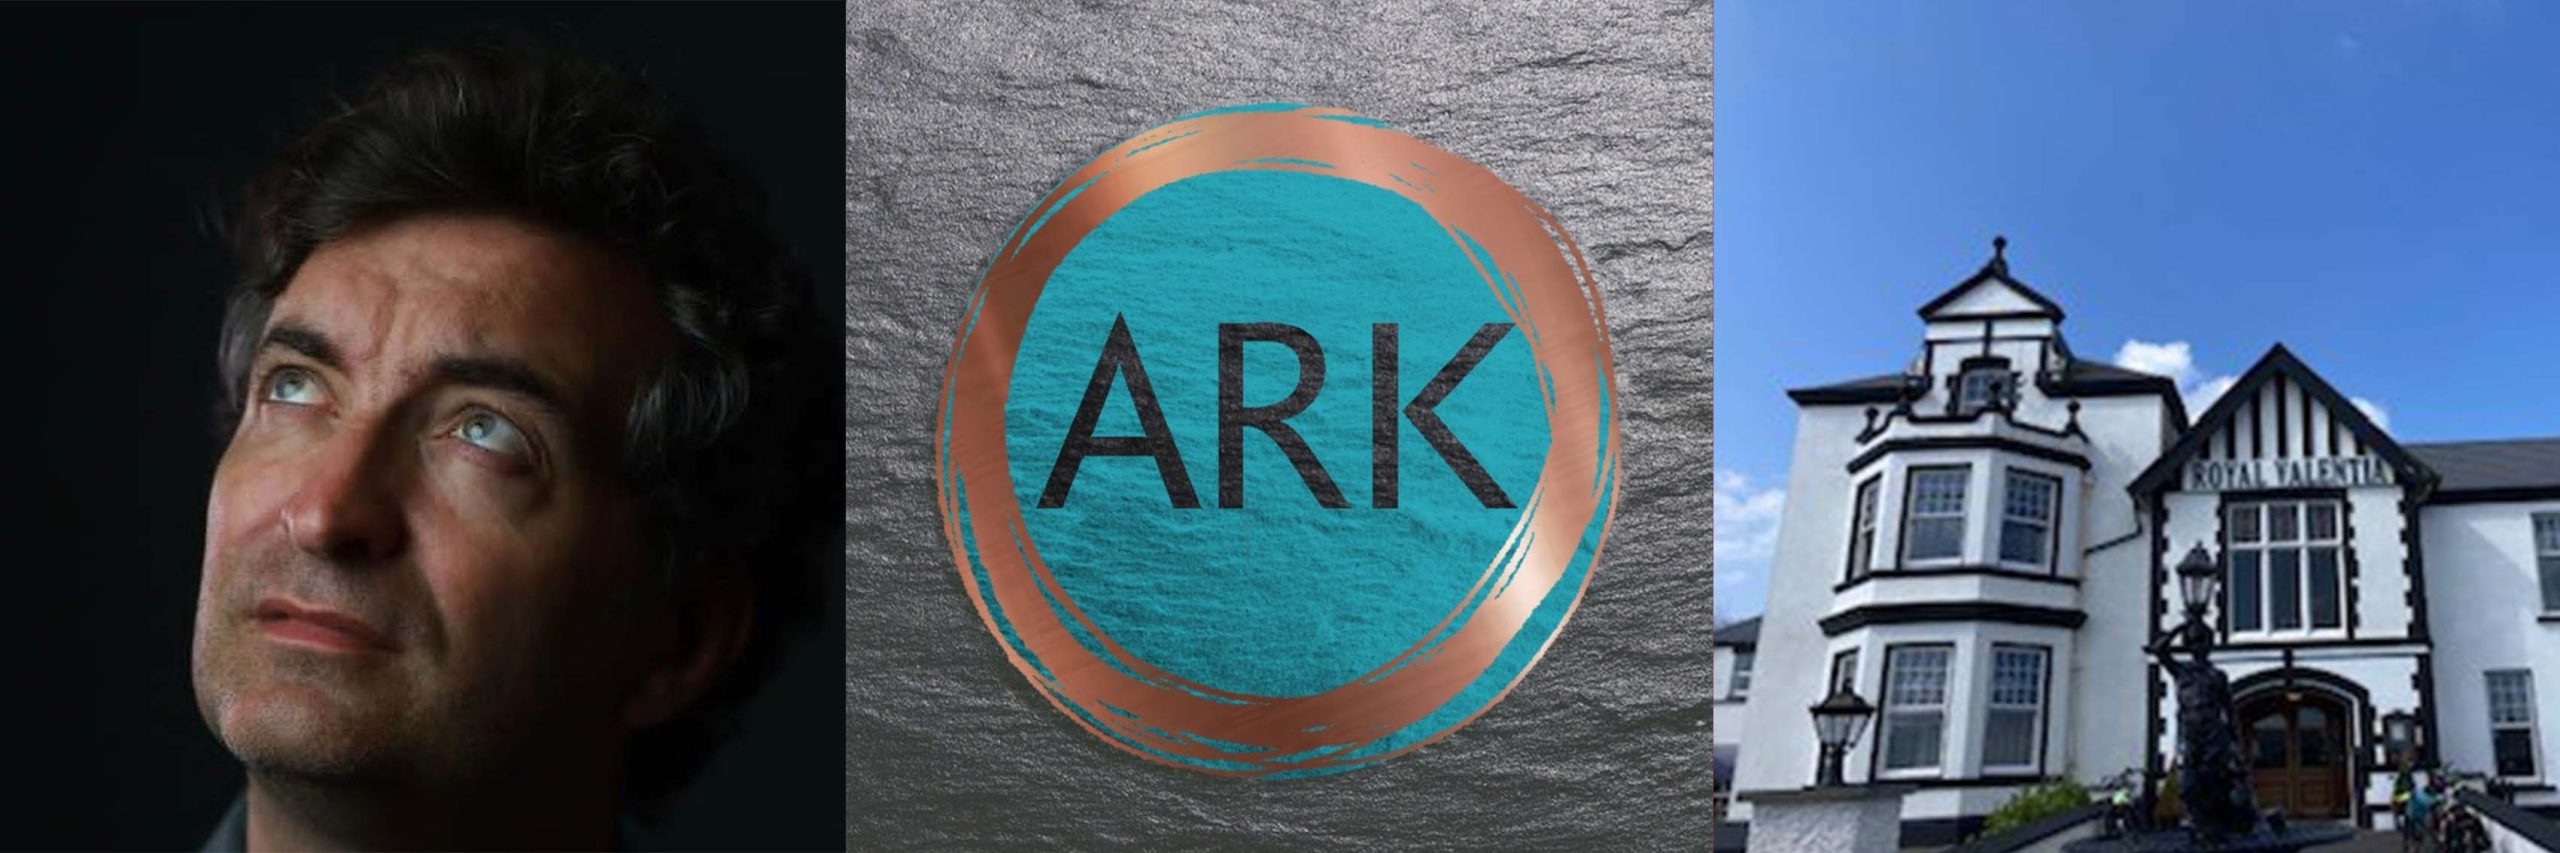 ARK-Banner-scaled.jpg